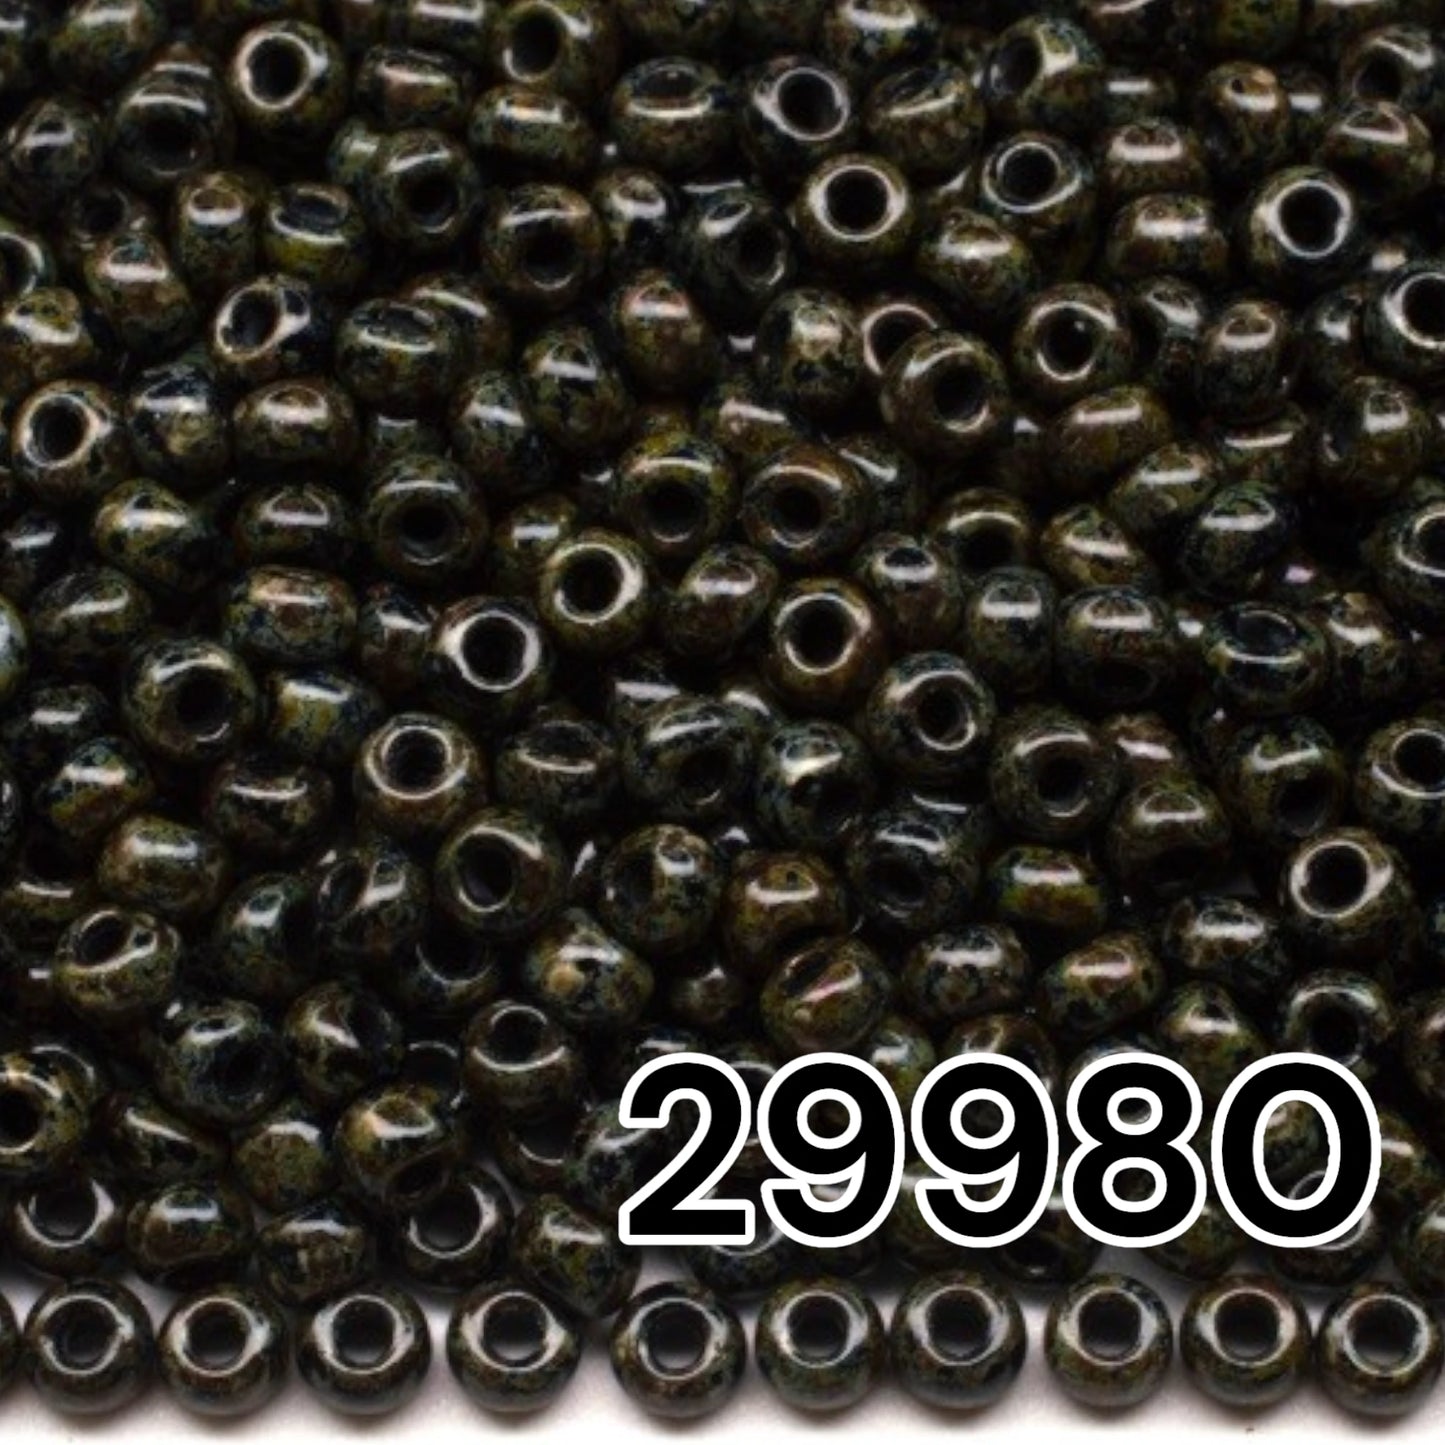 29980 Perles de rocailles tchèques PRECIOSA rondes 10/0 Travertin Gris Vert.